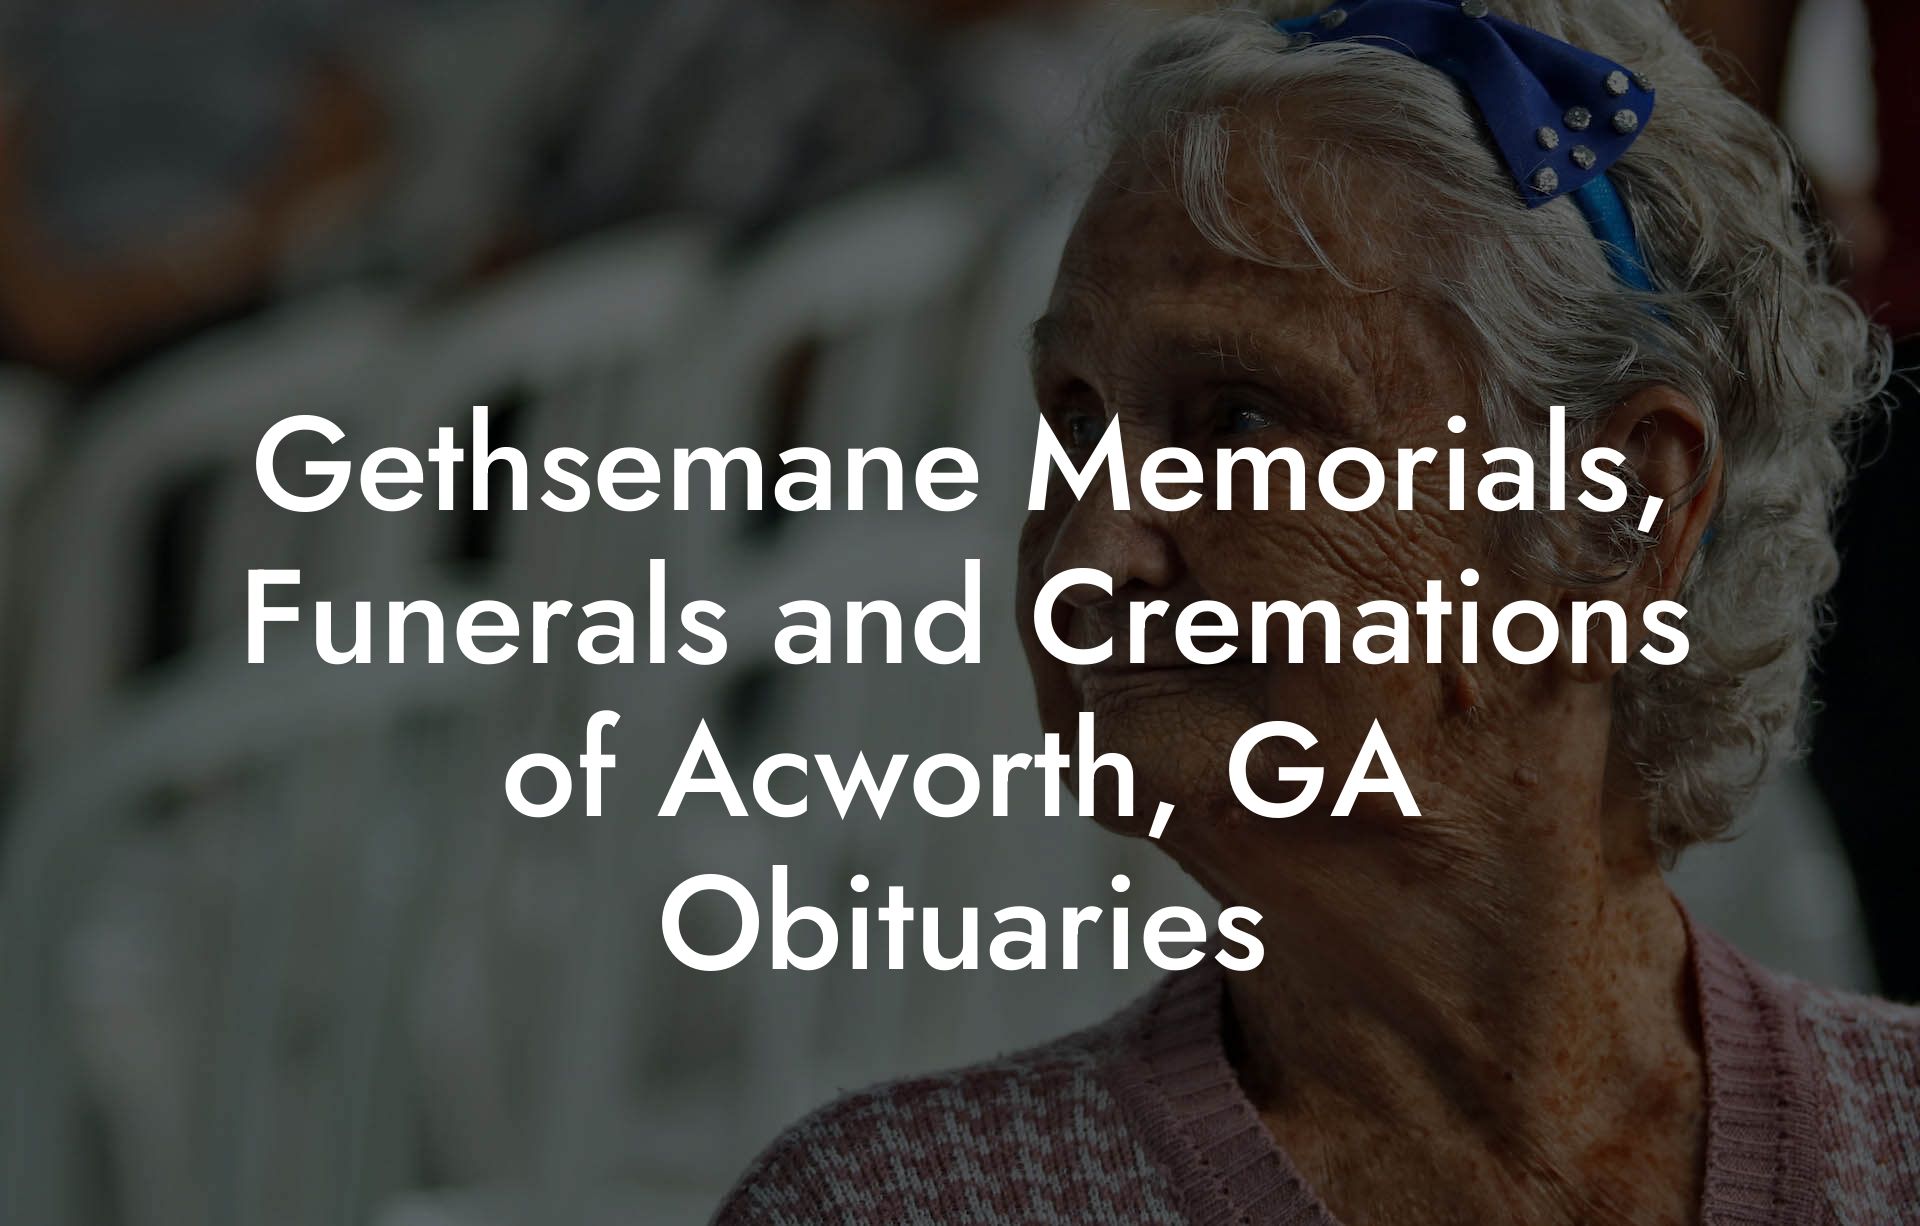 Gethsemane Memorials, Funerals and Cremations of Acworth, GA Obituaries